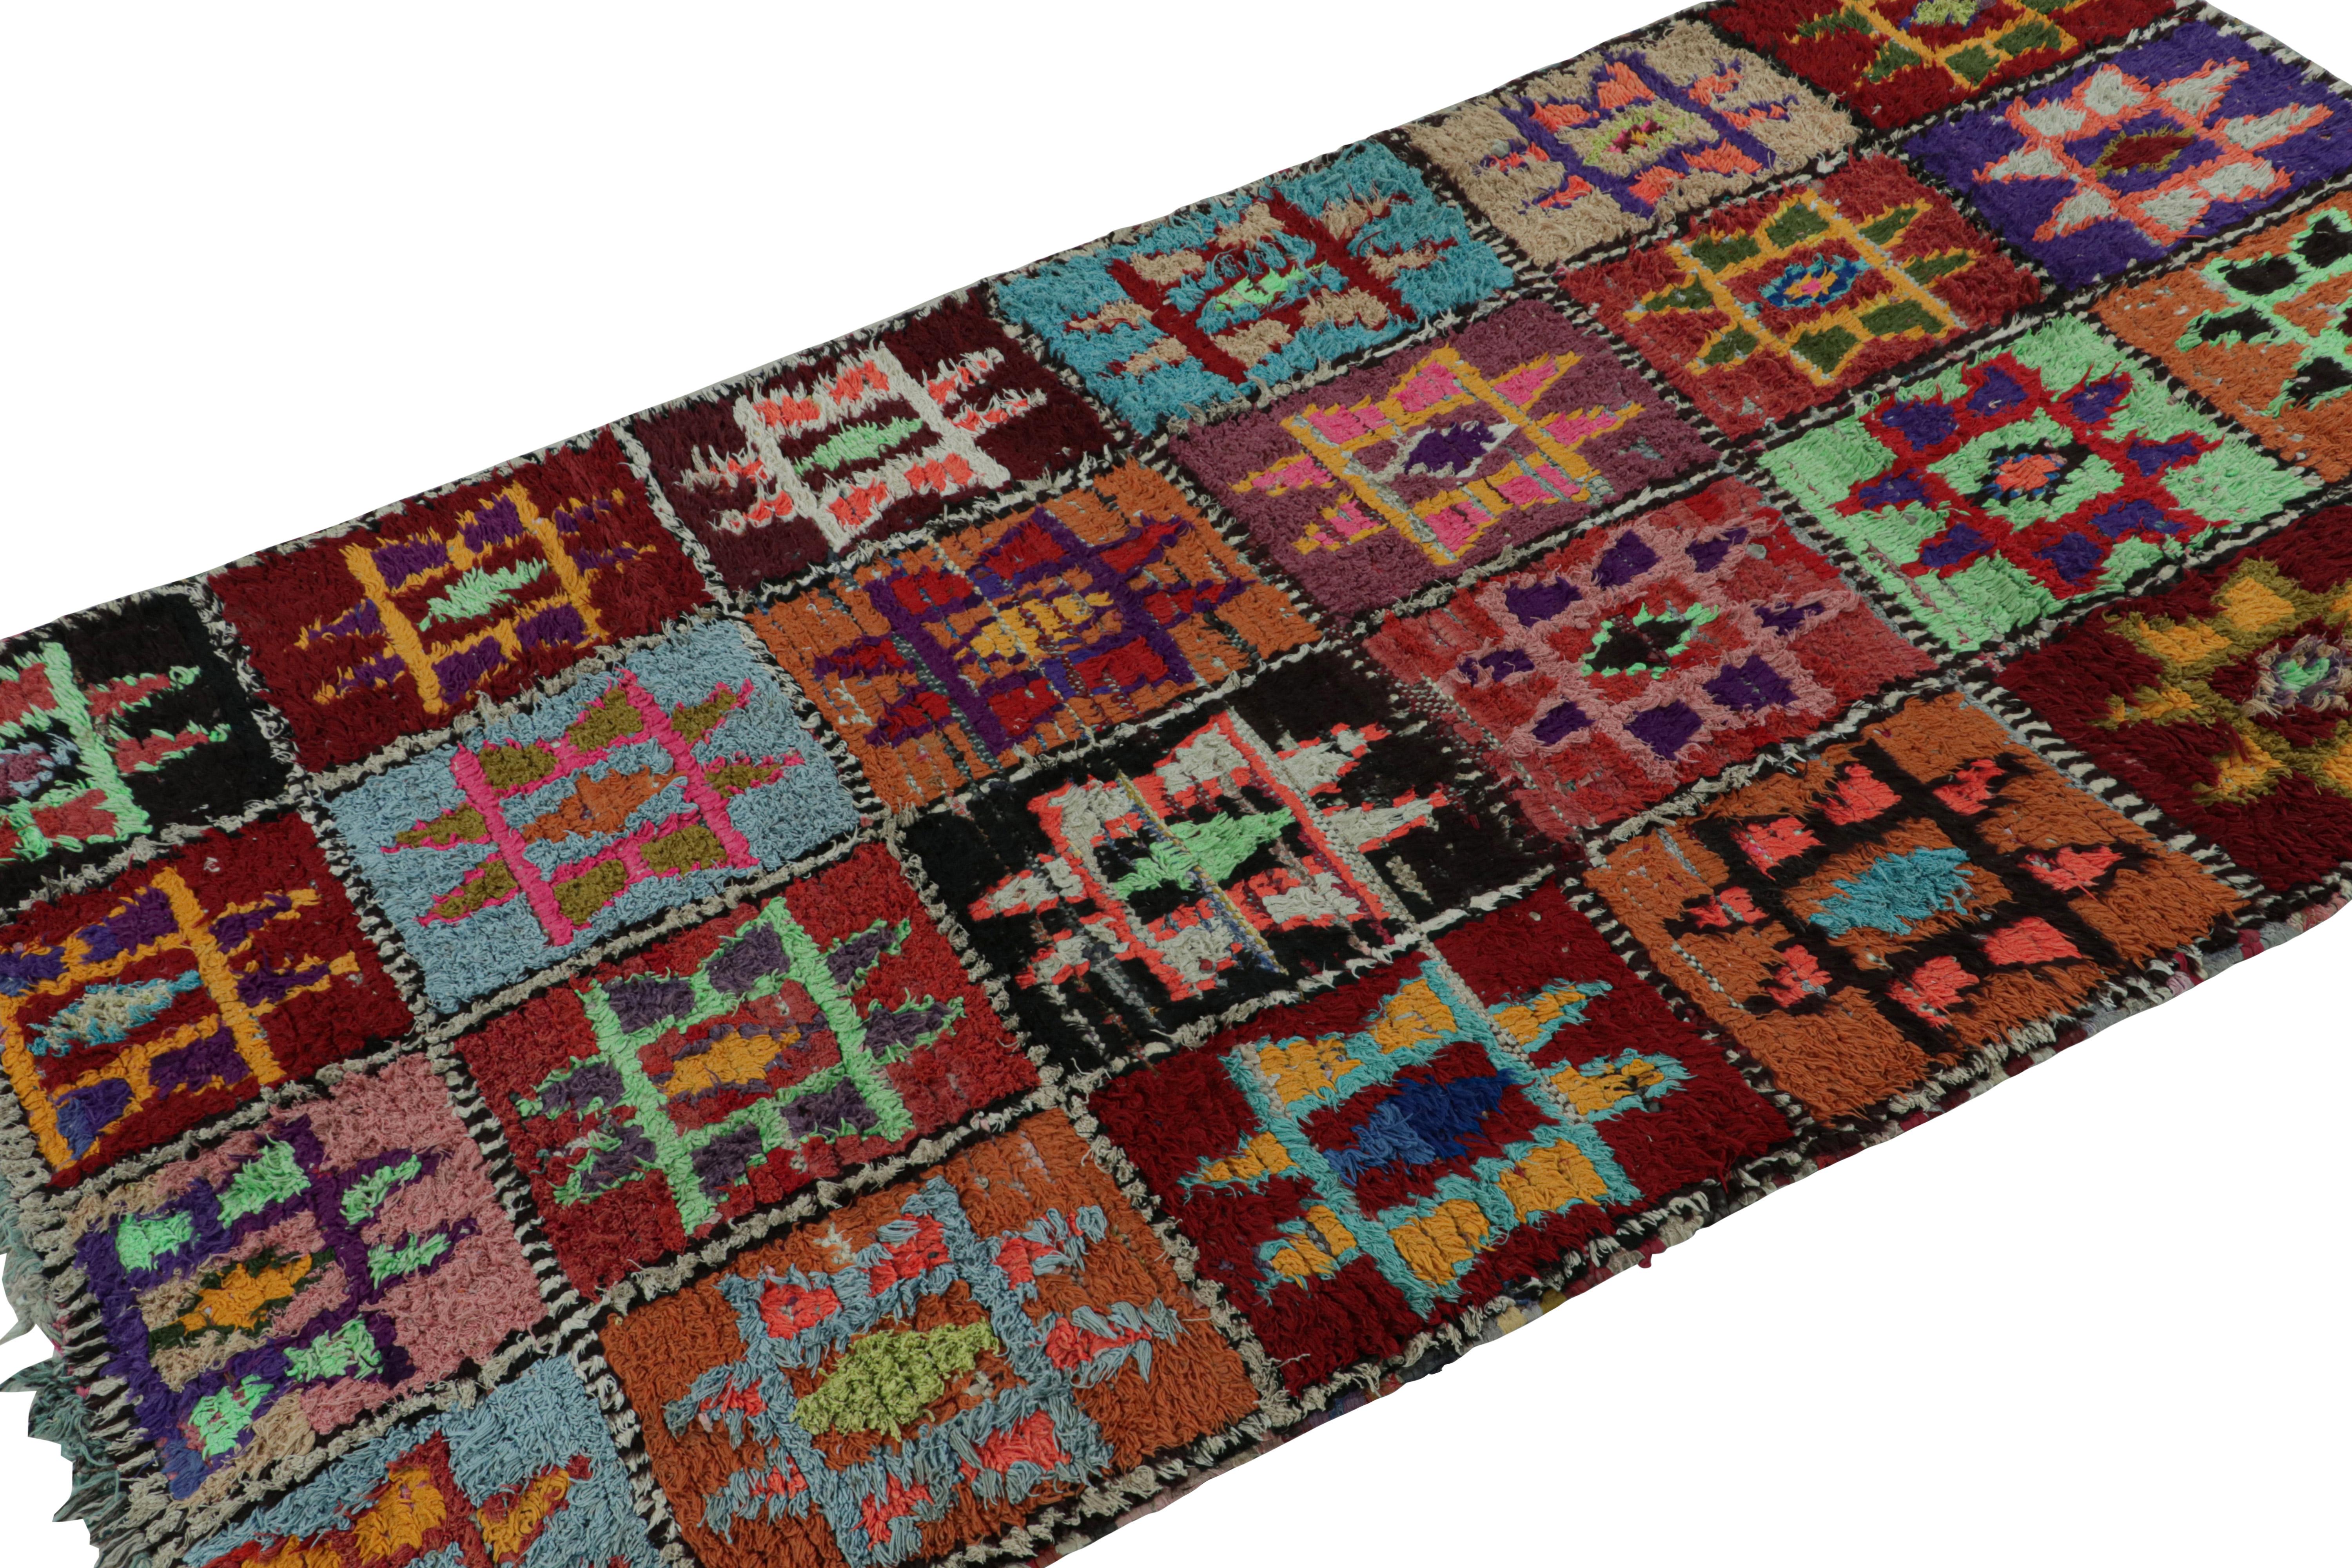 Dieser handgeknüpfte marokkanische Teppich (4x8) aus Wolle und Baumwolle aus der Zeit um 1950-1960 stammt vermutlich vom Stamm der Azilal. 

Über das Design: 

Dieser Teppich erfreut sich eines skurrilen Farbspiels in den archaischen geometrischen